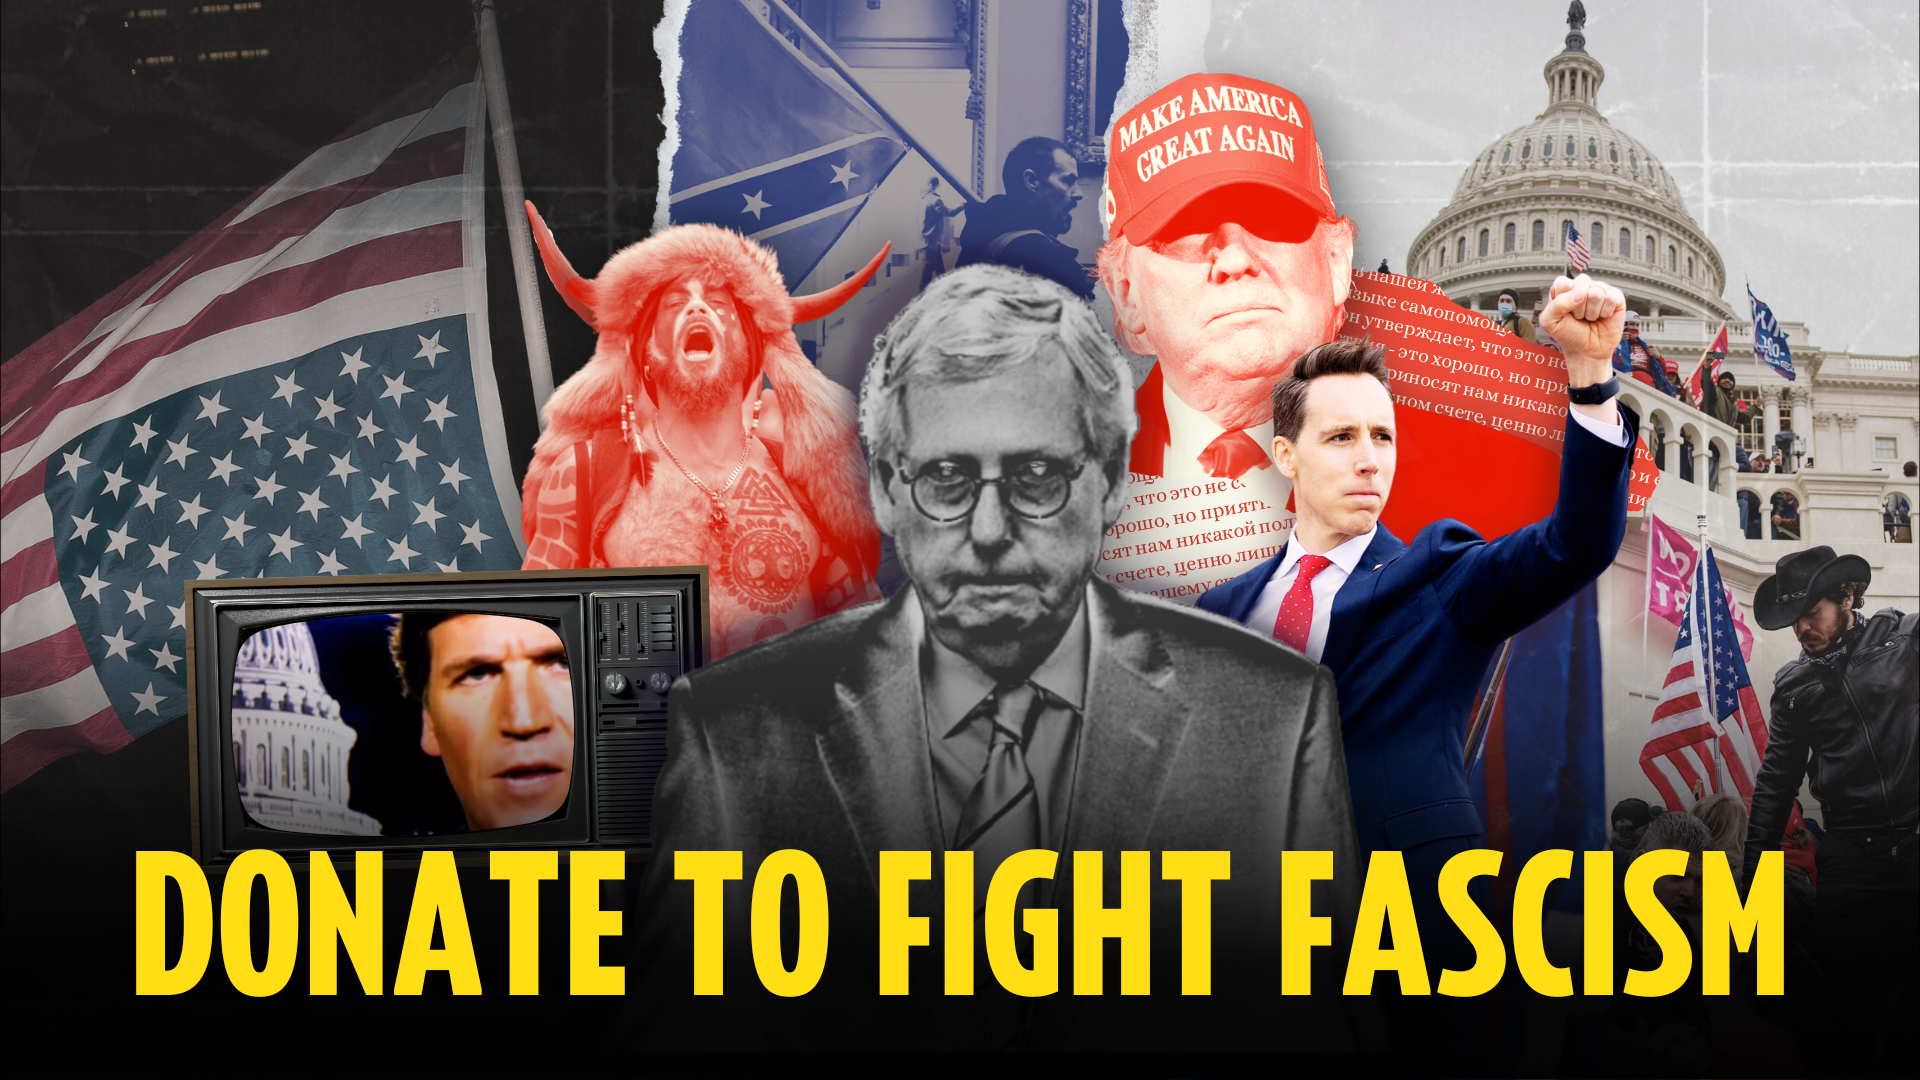 Donar para luchar contra el fascismo; Collage de símbolos y líderes fascistas